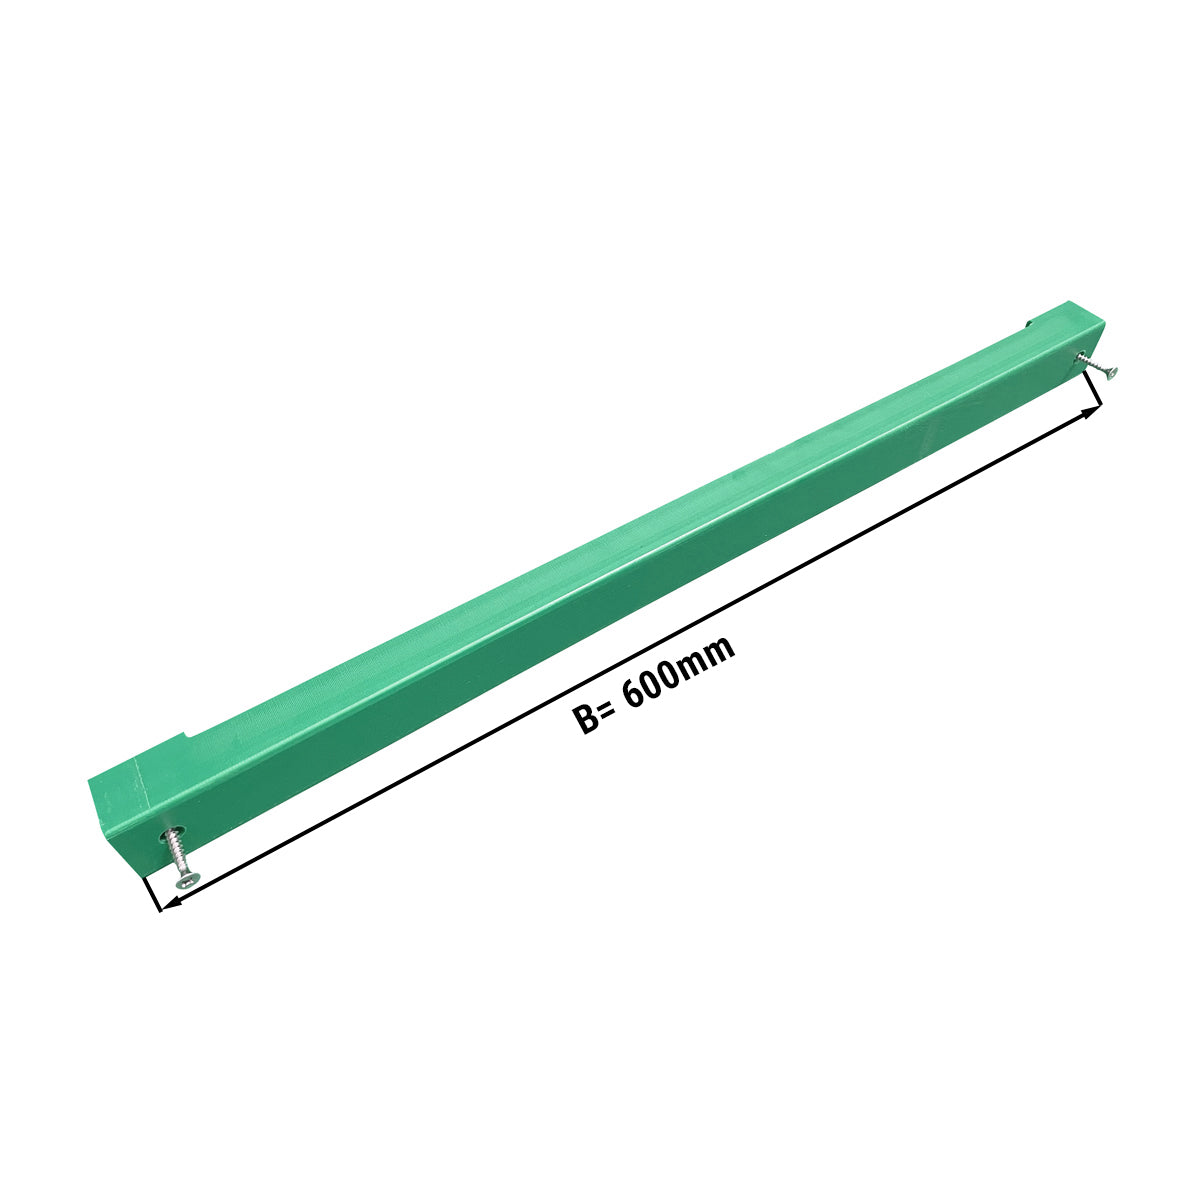 Knivholder til skjærebrett - 60 cm - grønn